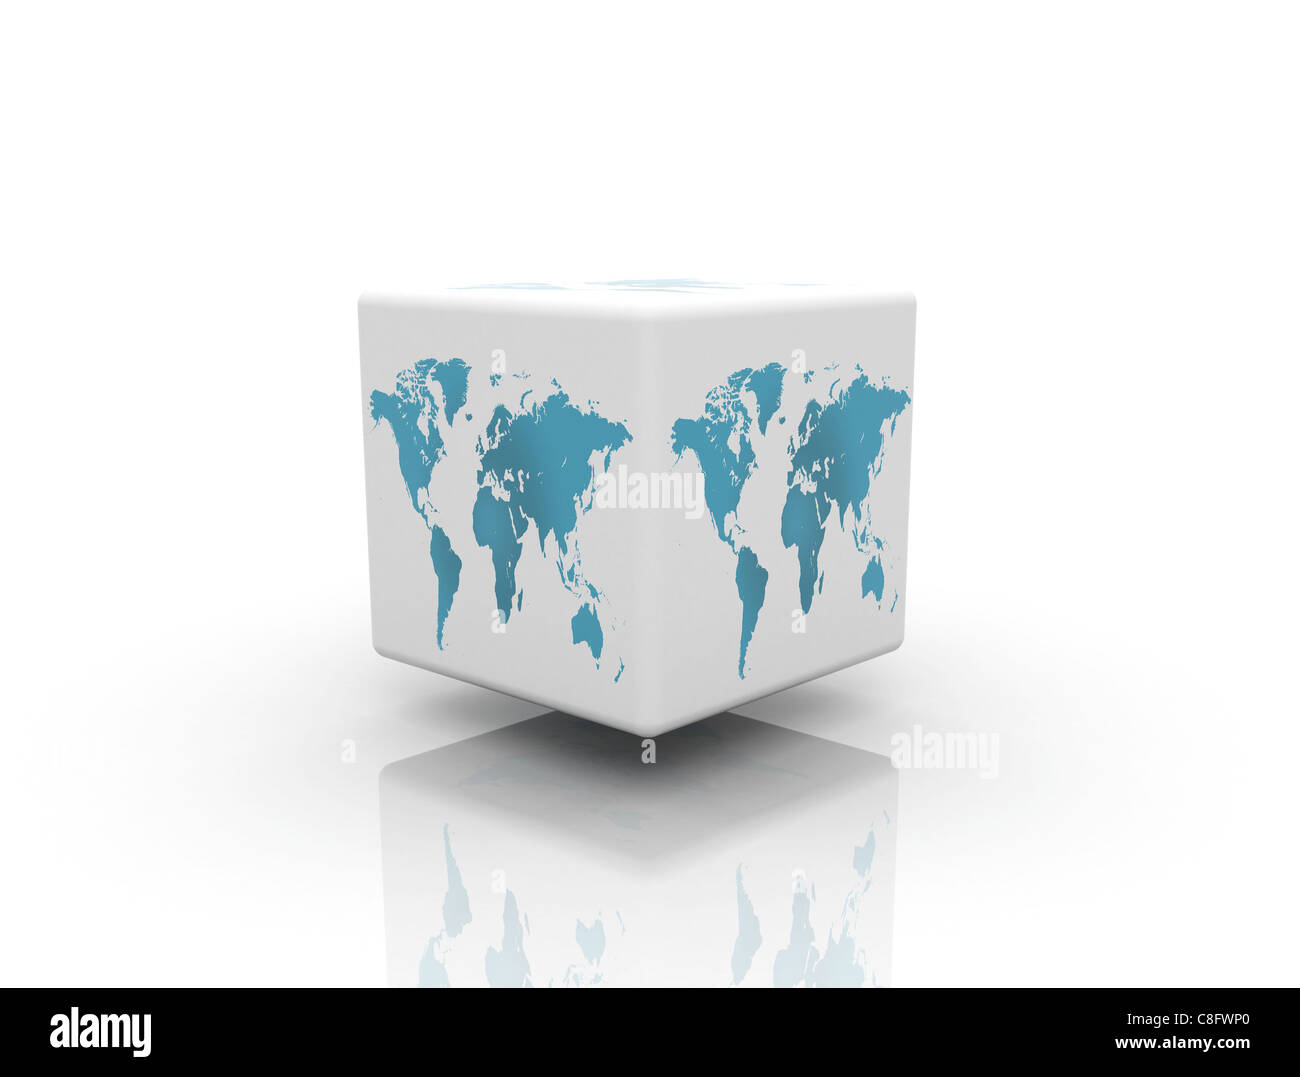 world map box on white background Stock Photo